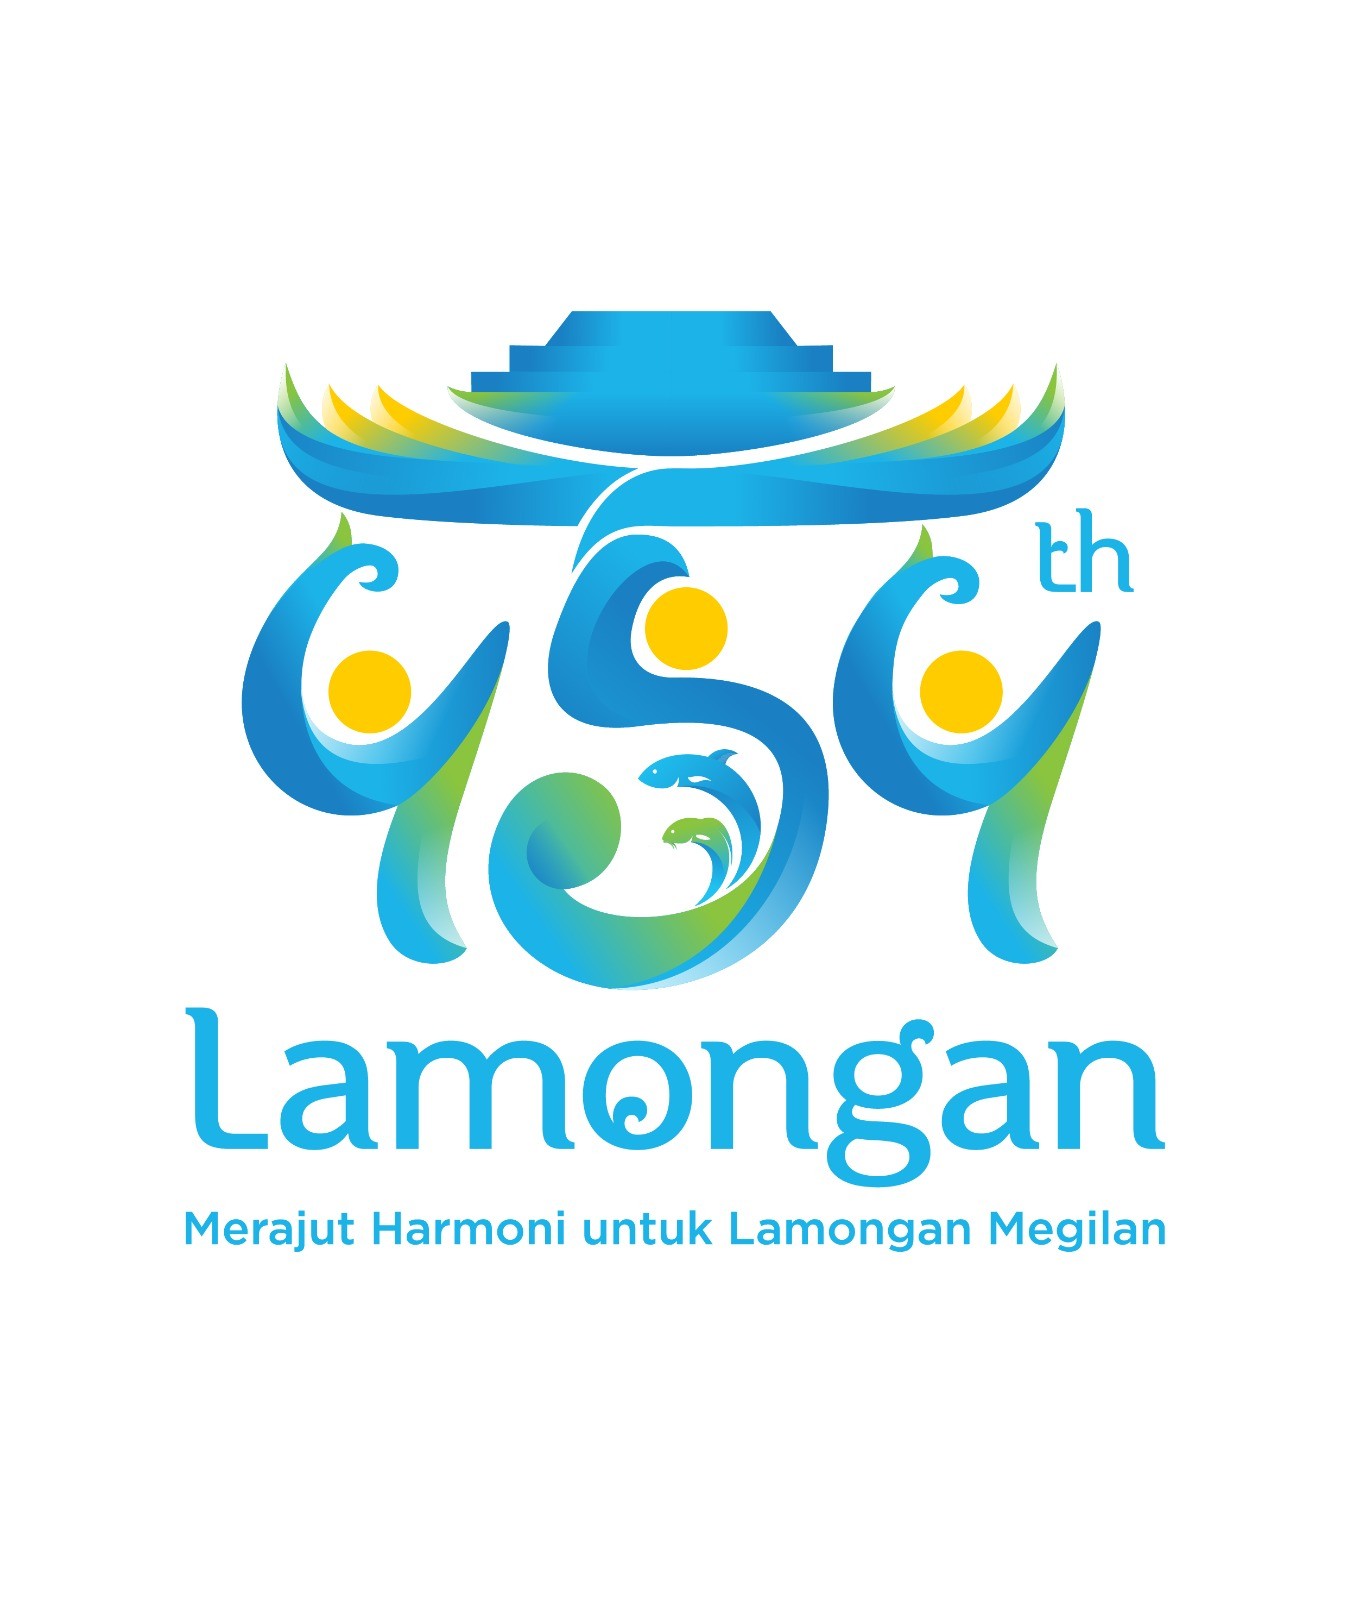 26 Mei Tahun 2023 ini merupakan hari bersejarah bagi Kabupaten Lamongan. Karena pada tahun ini Lamongan genap berusia 454 Tahun. 

Berikut Link Logo HJL bisa diunduh di bit.ly/hjl454